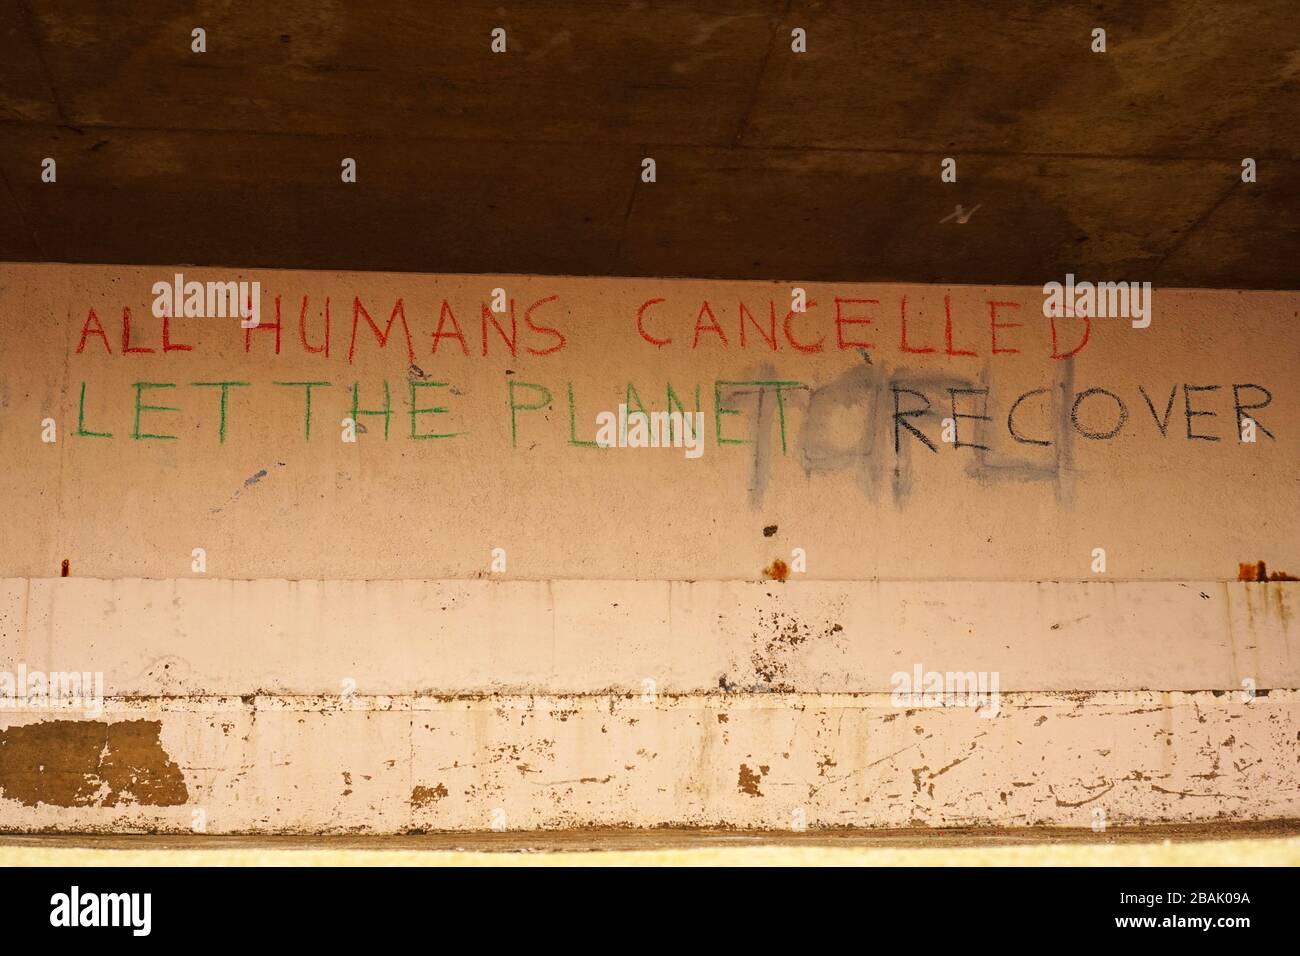 Graffiti auf Betonwand, die schreibt: "Alle Menschen haben abgesagt, lassen den Planeten sich erholen" Stockfoto